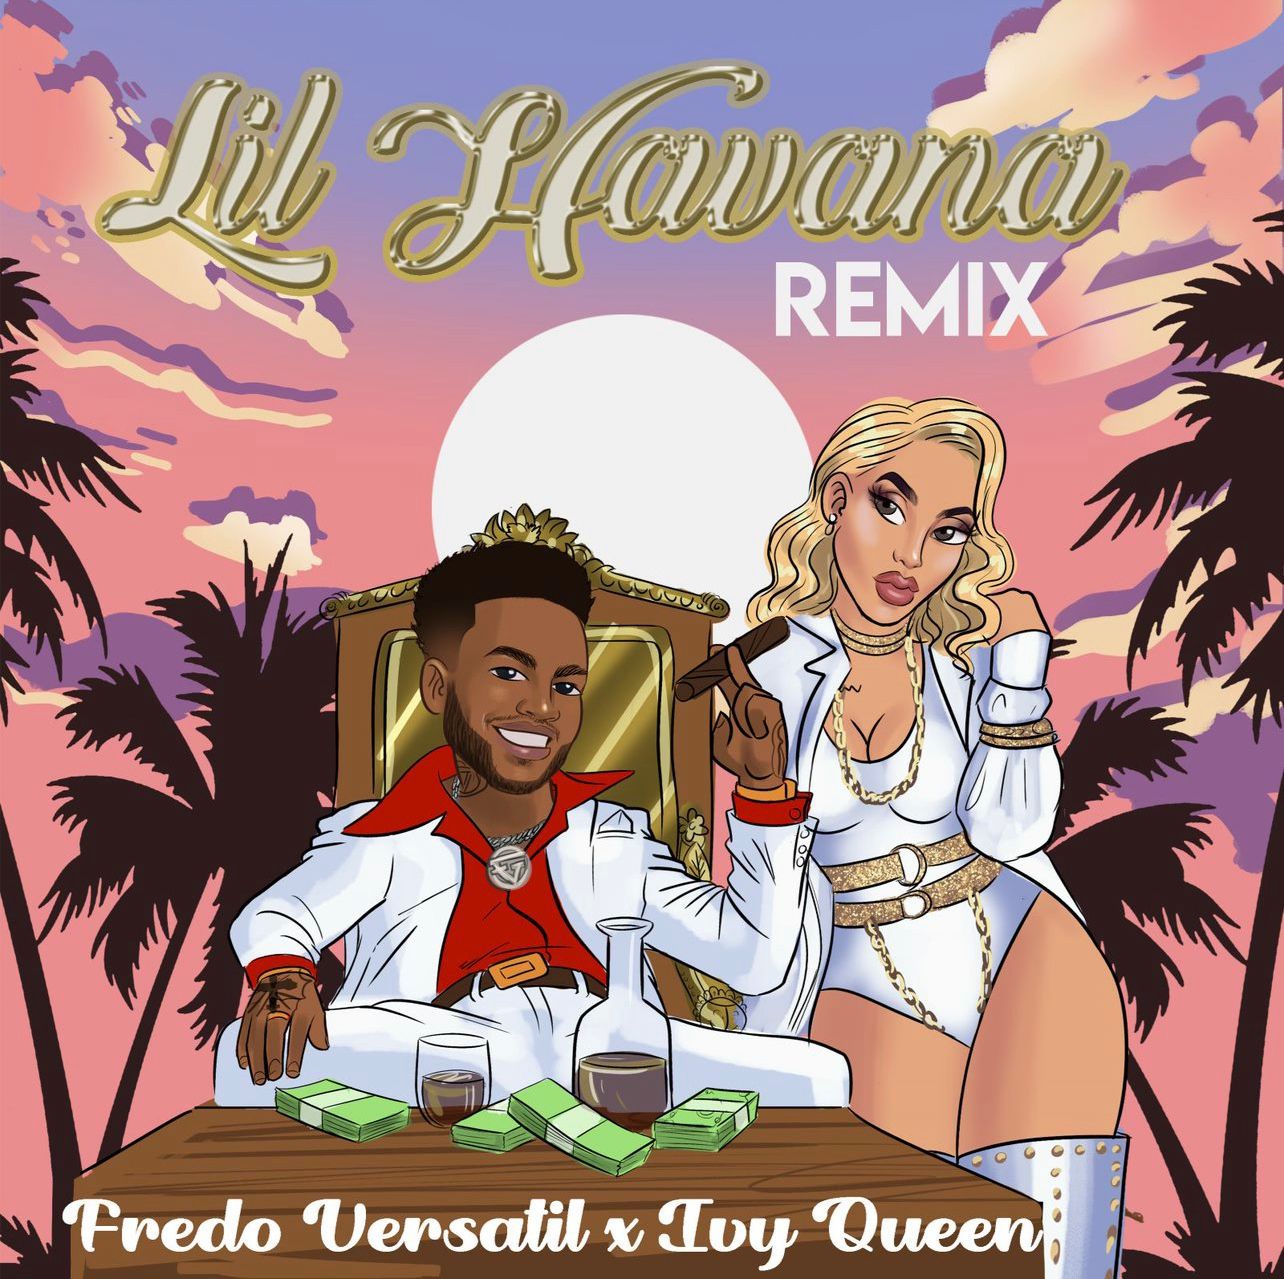 Fredo Versátil une a Ivy Queen en el remix de "Little Havana" (+vídeo)